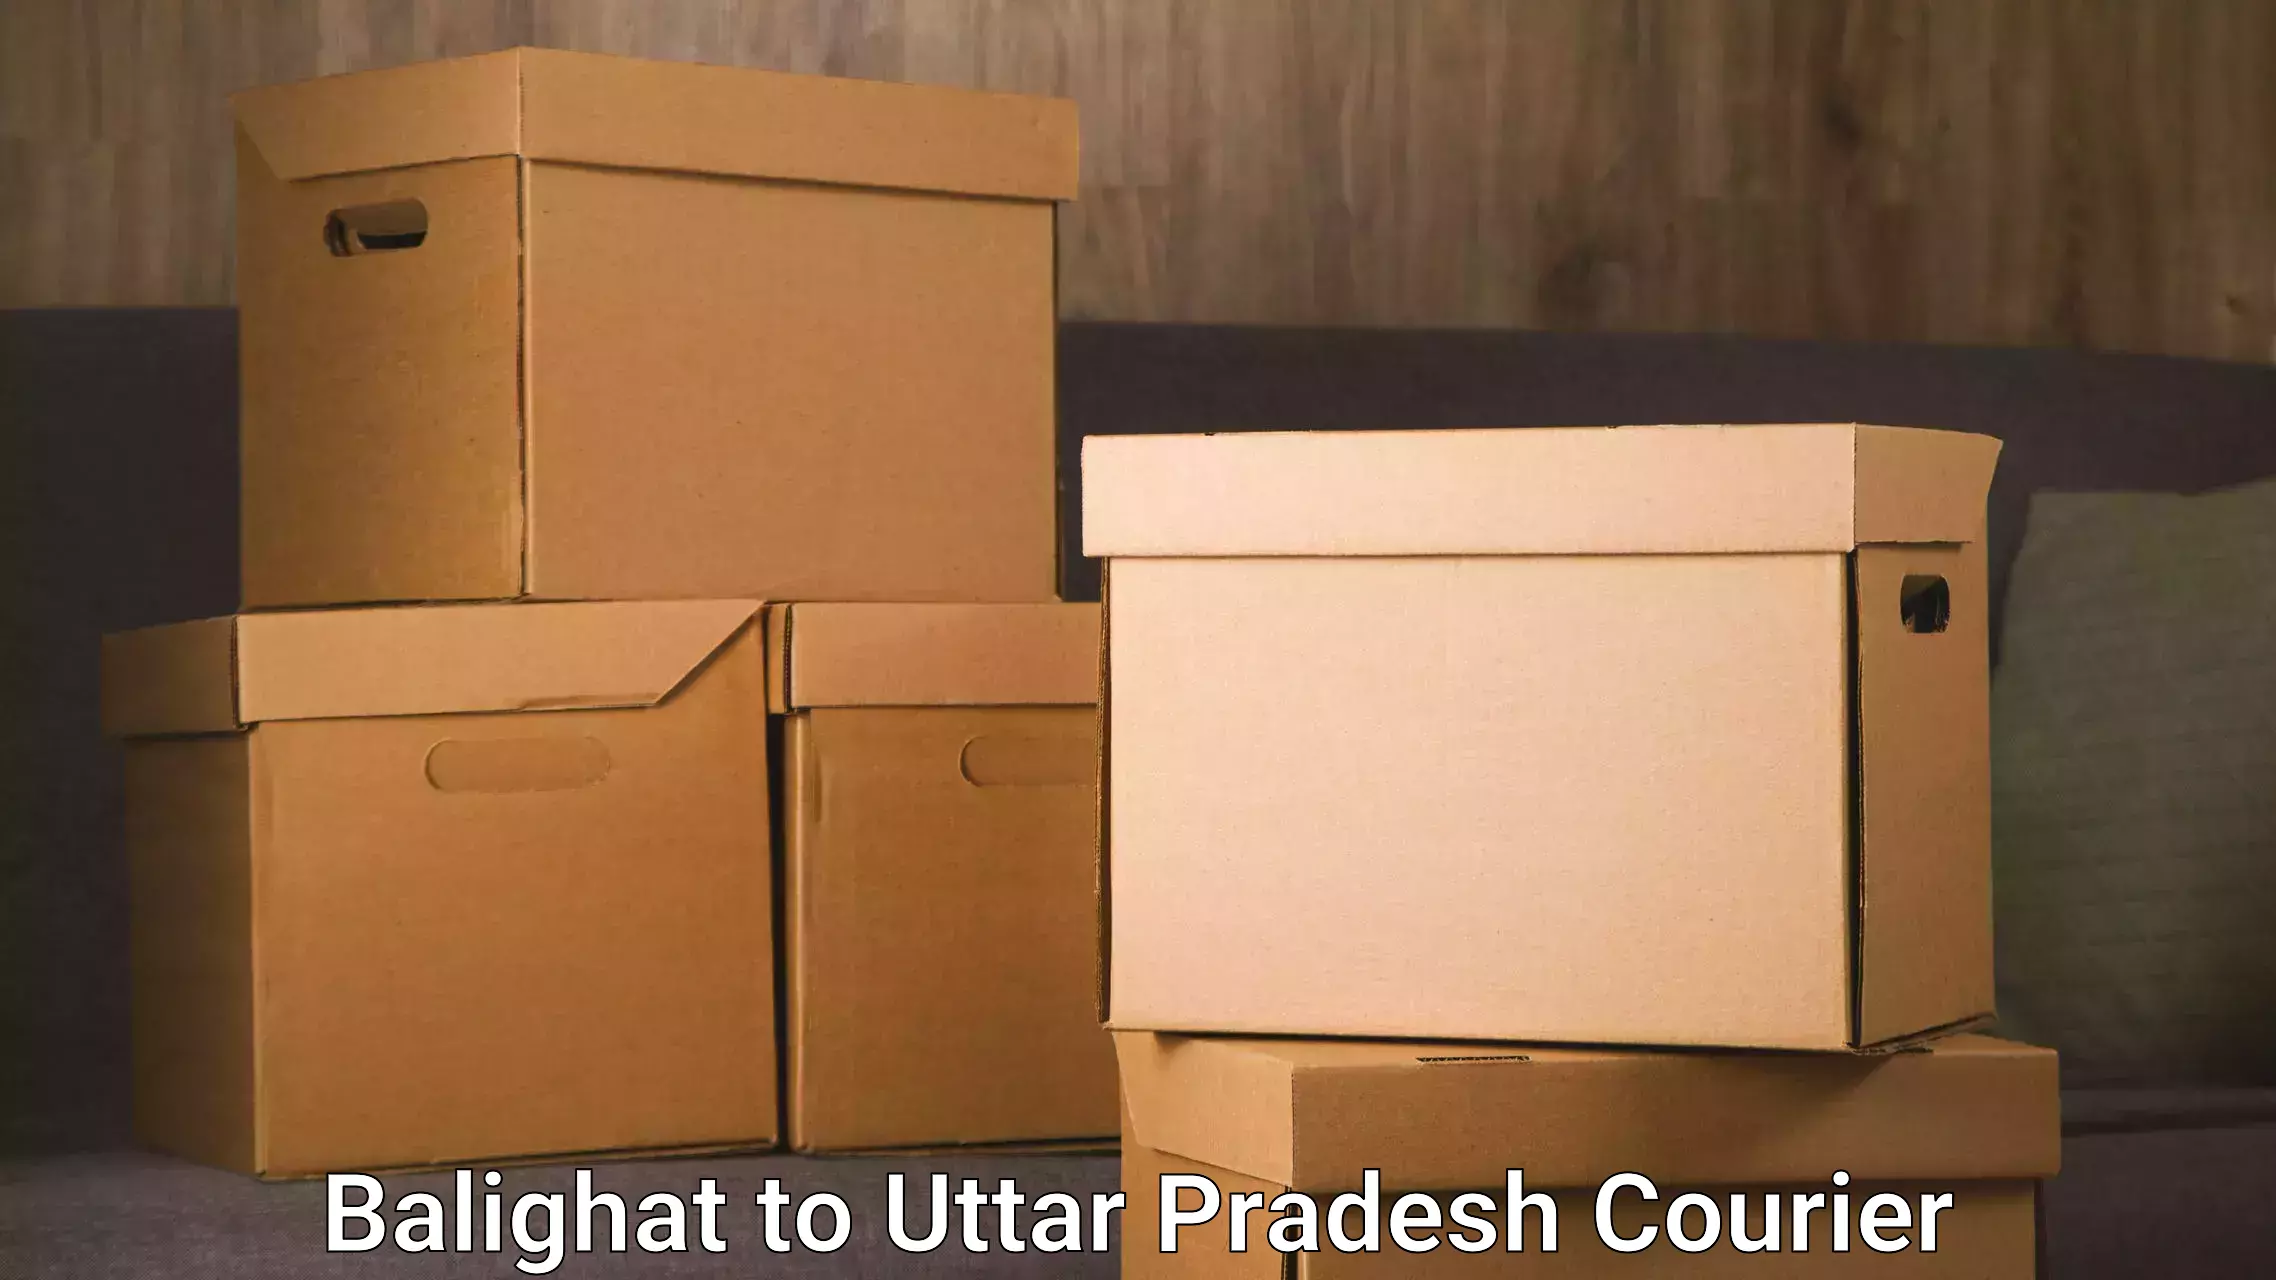 Next day courier in Balighat to Uttar Pradesh